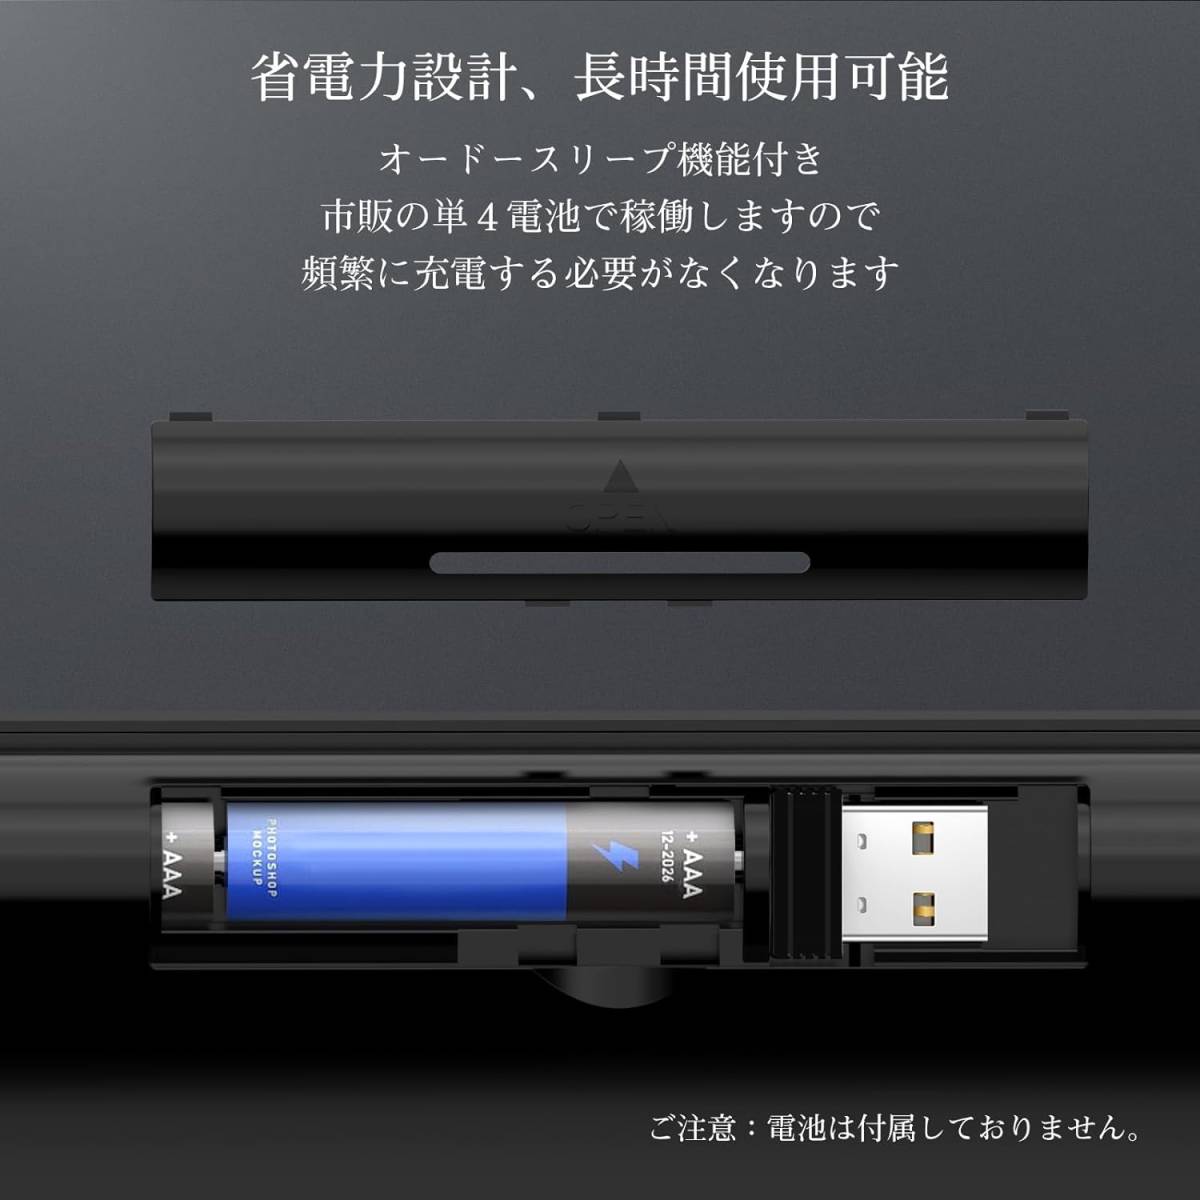 デュアルモード ワイヤレスキーボード テンキーパッド JIS日本語配列 2.4Ghz接続 無線 薄型 Mac/iOS/Windows多OS対応